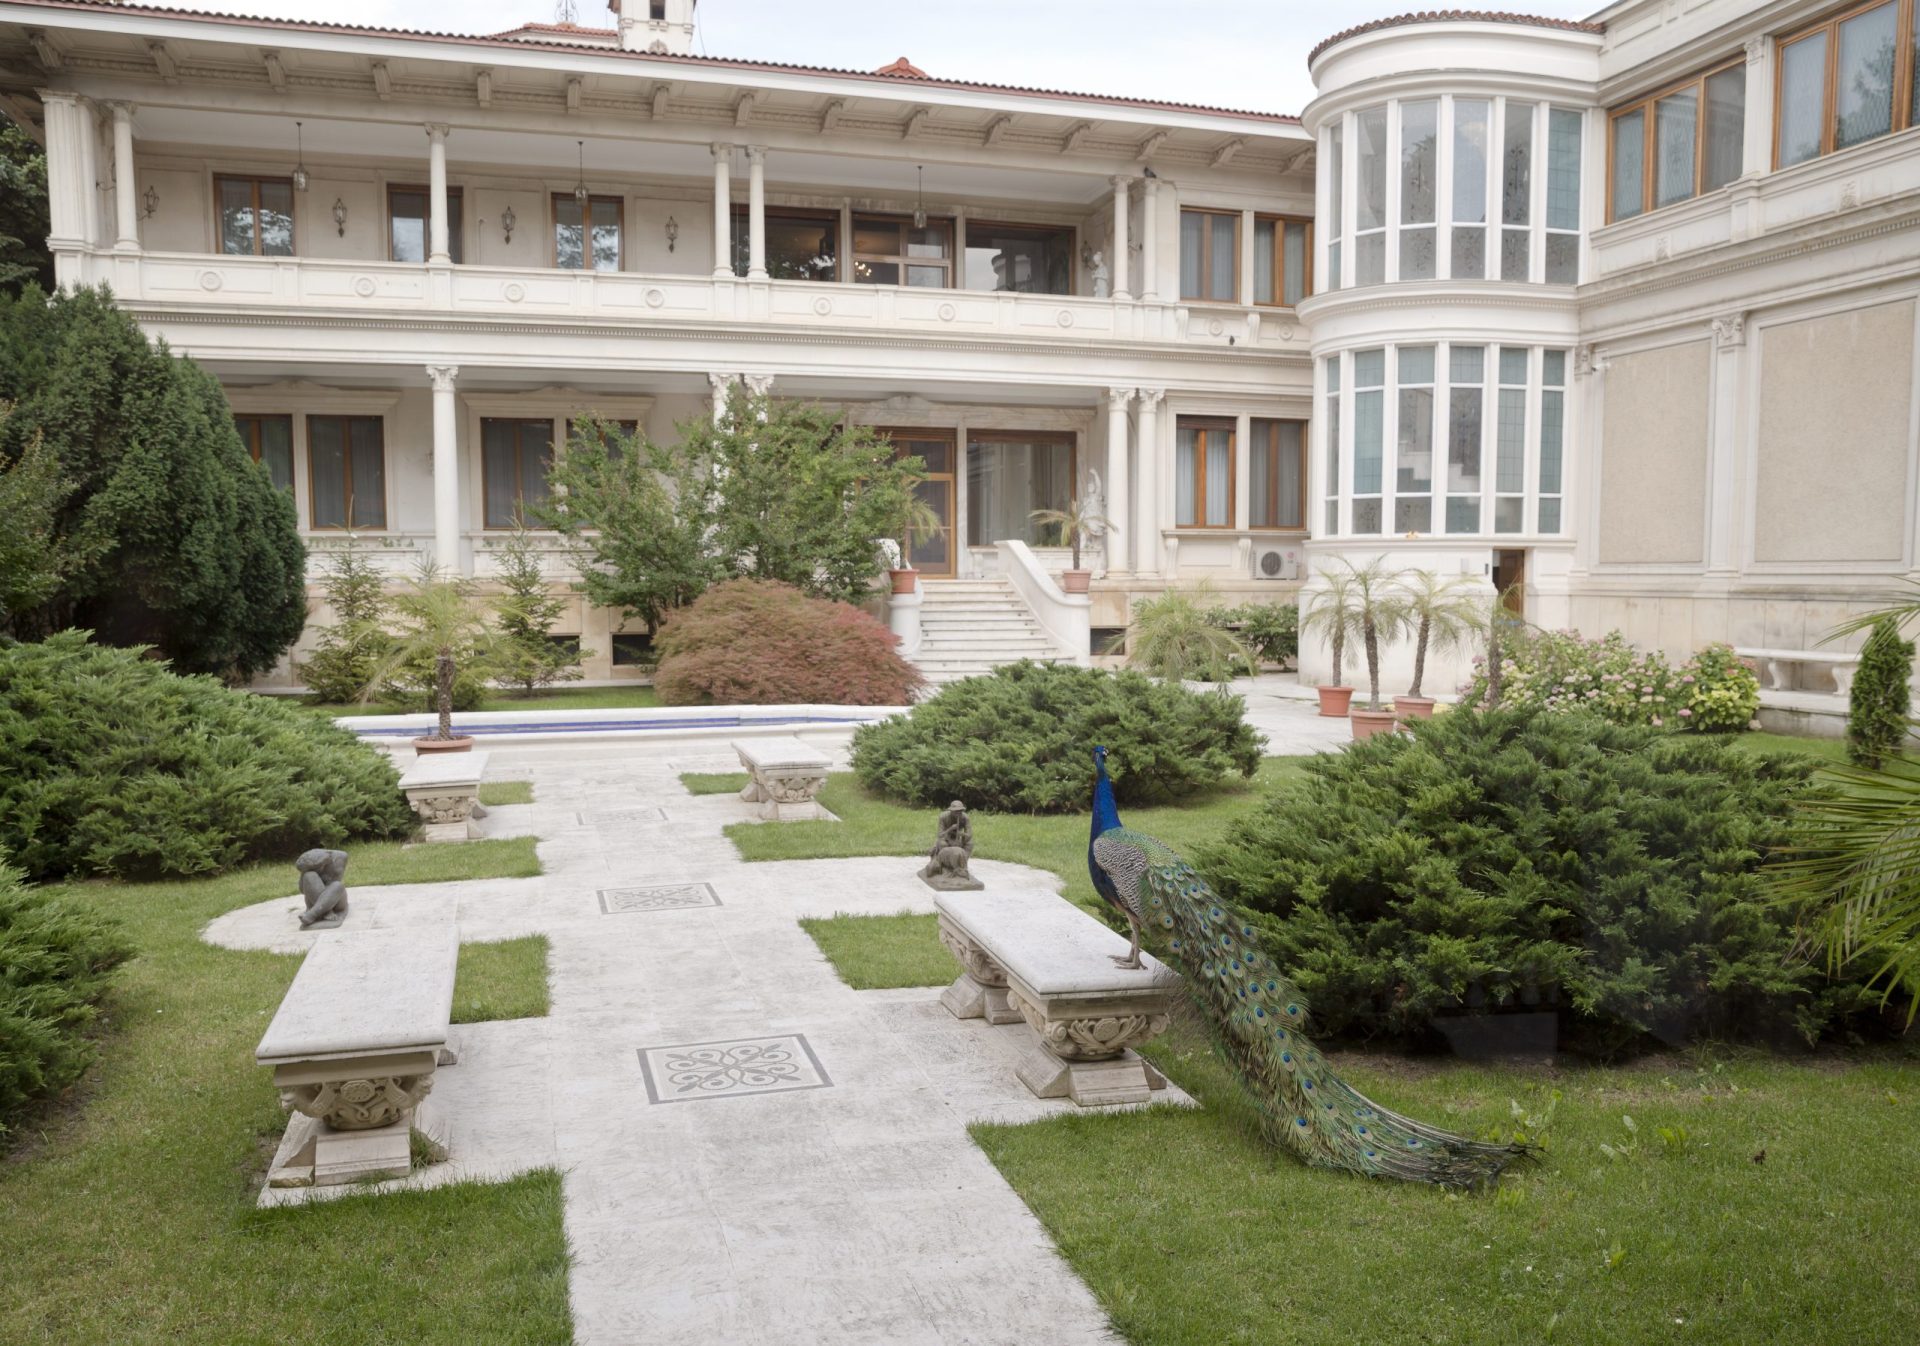 Conheça o palácio de luxo do ditador Ceausescu